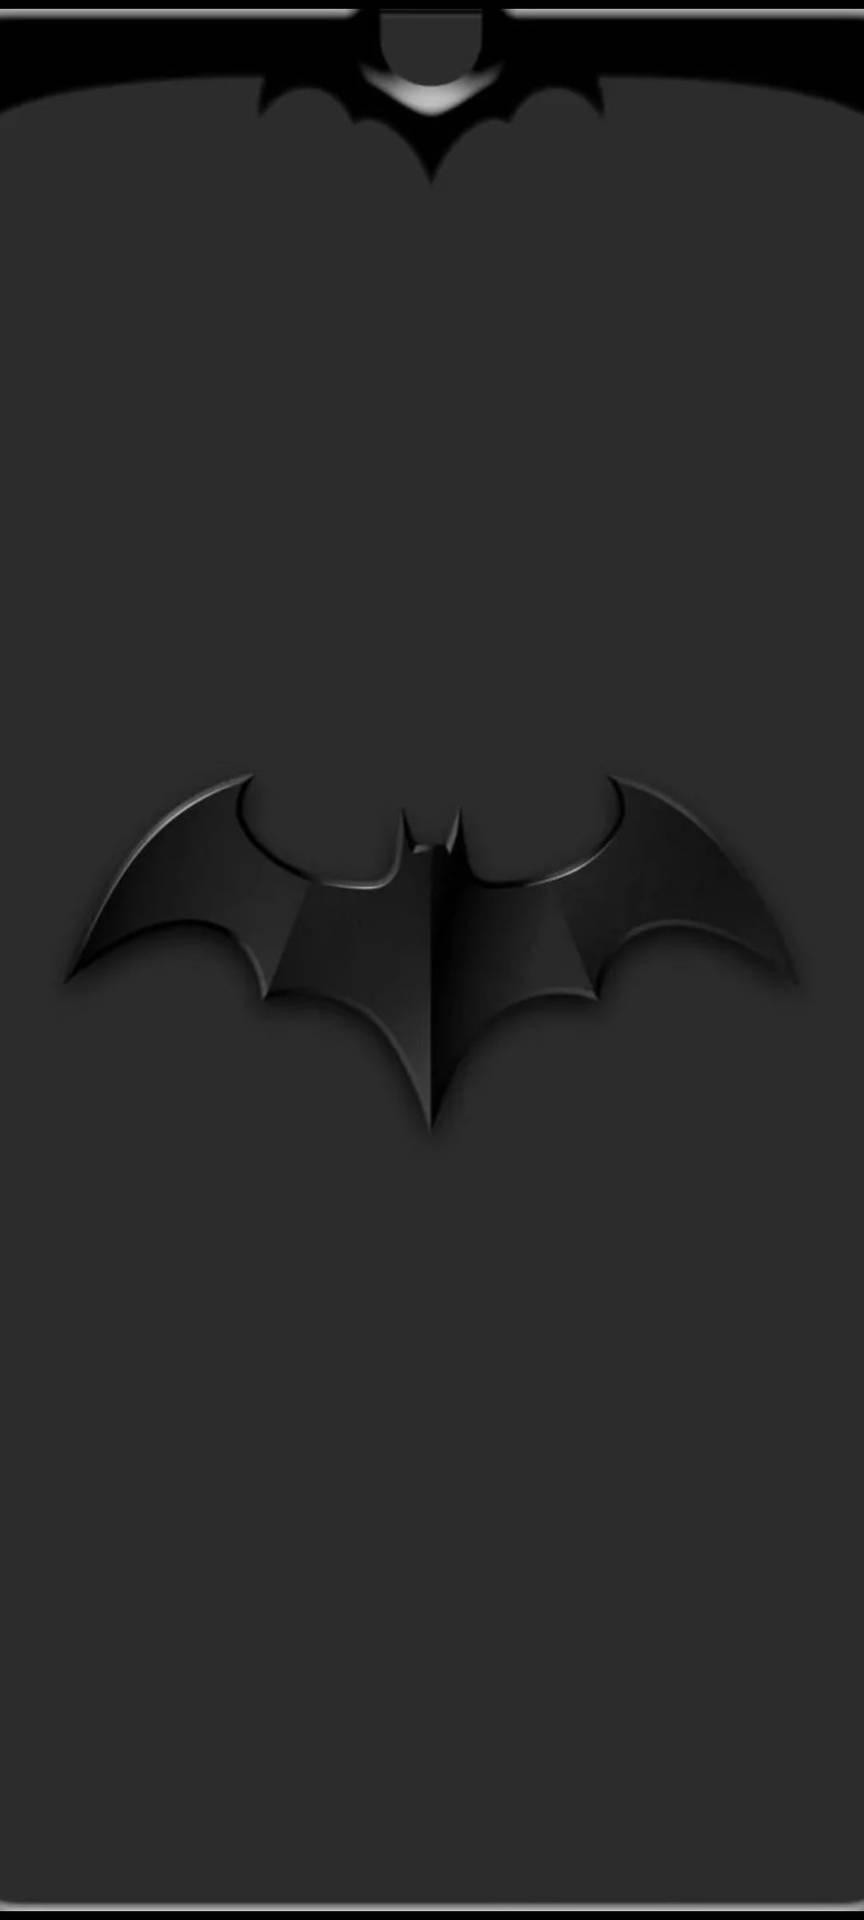 Logodi Batman Nero In Rilievo Per Iphone. Sfondo